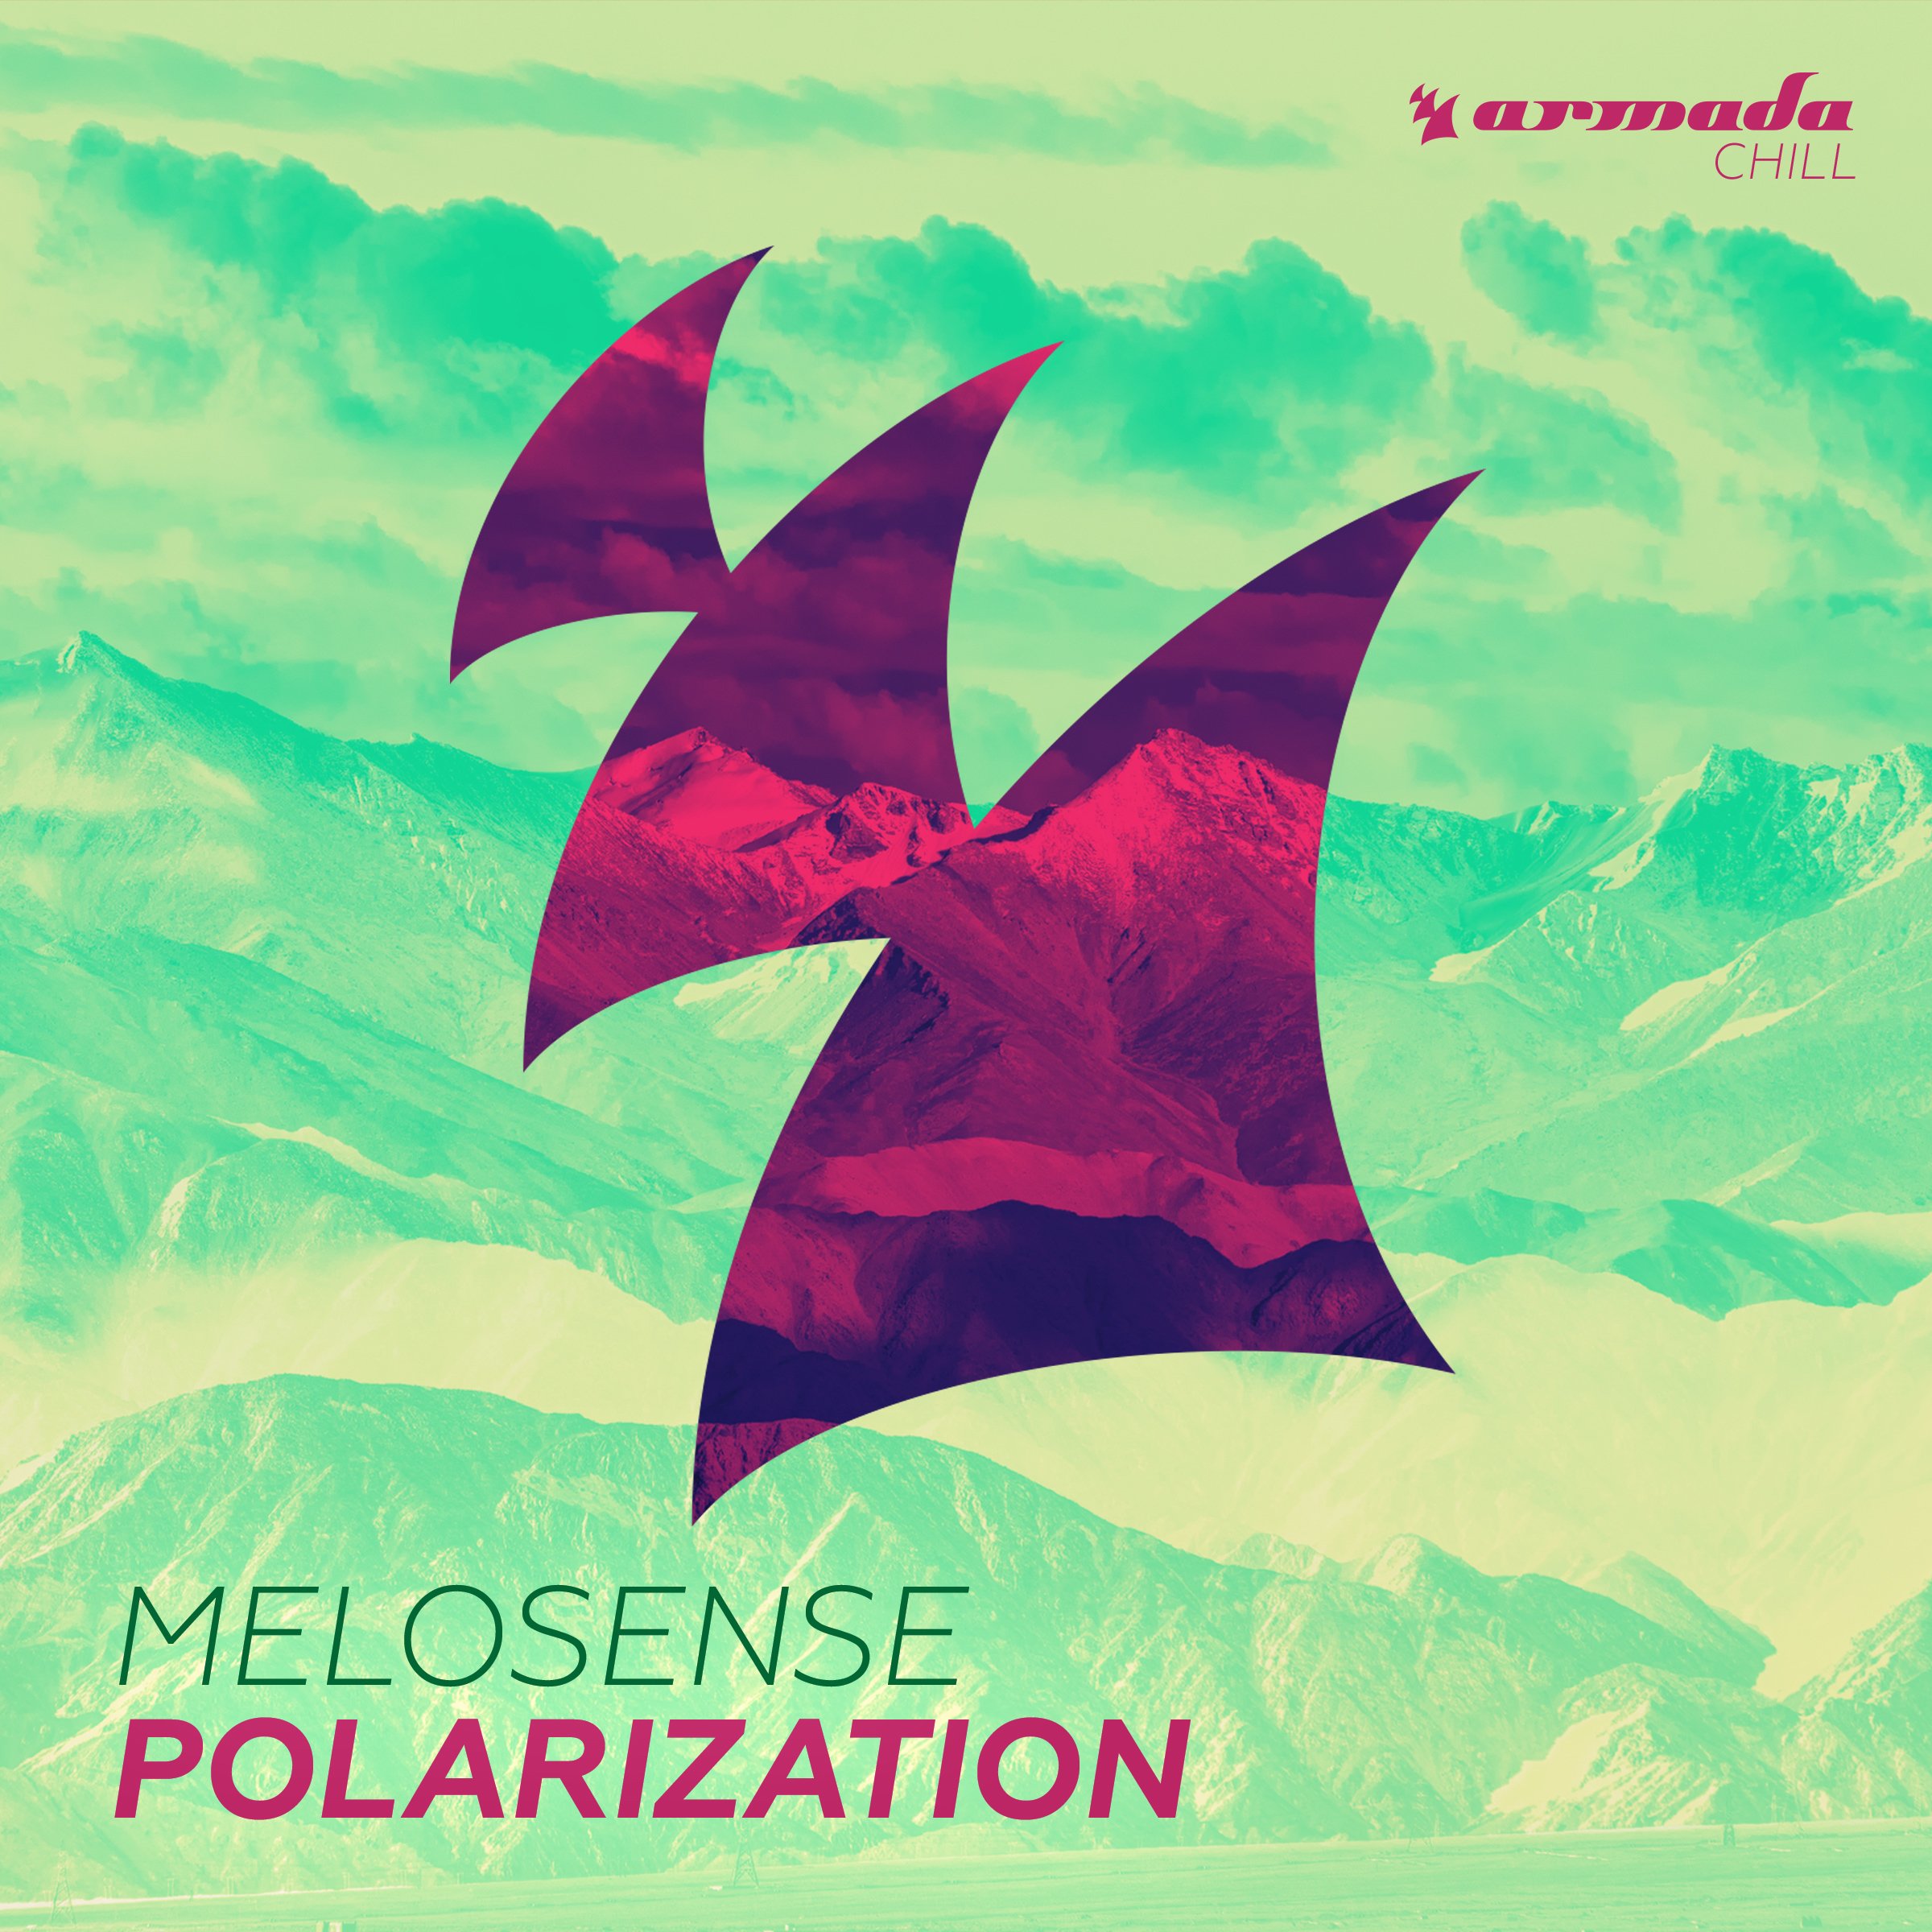 Mias feat. Polarization Melosense. Manu Zain. Обложка на трек Chill. Сокин Мелосенсе.